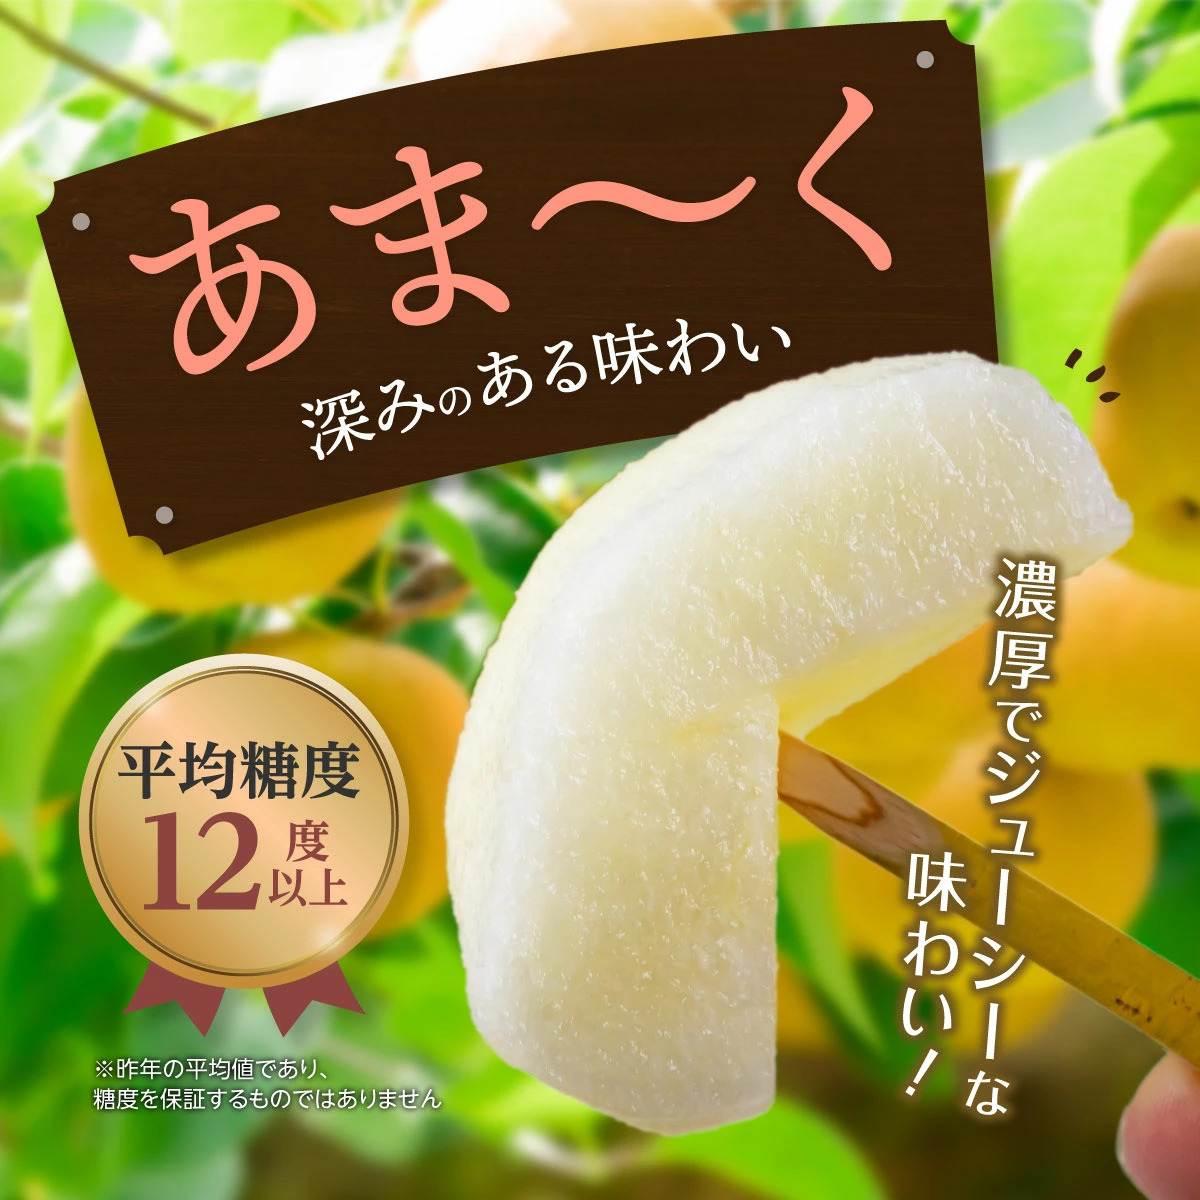 大分県日田地方の梨は、切れば果汁がしたたり落ちるジューシーな逸品！濃厚な甘味と程よい酸味、シャクシャクした食感が美味しい甘梨を、今年も産地直送でお届けいたします。